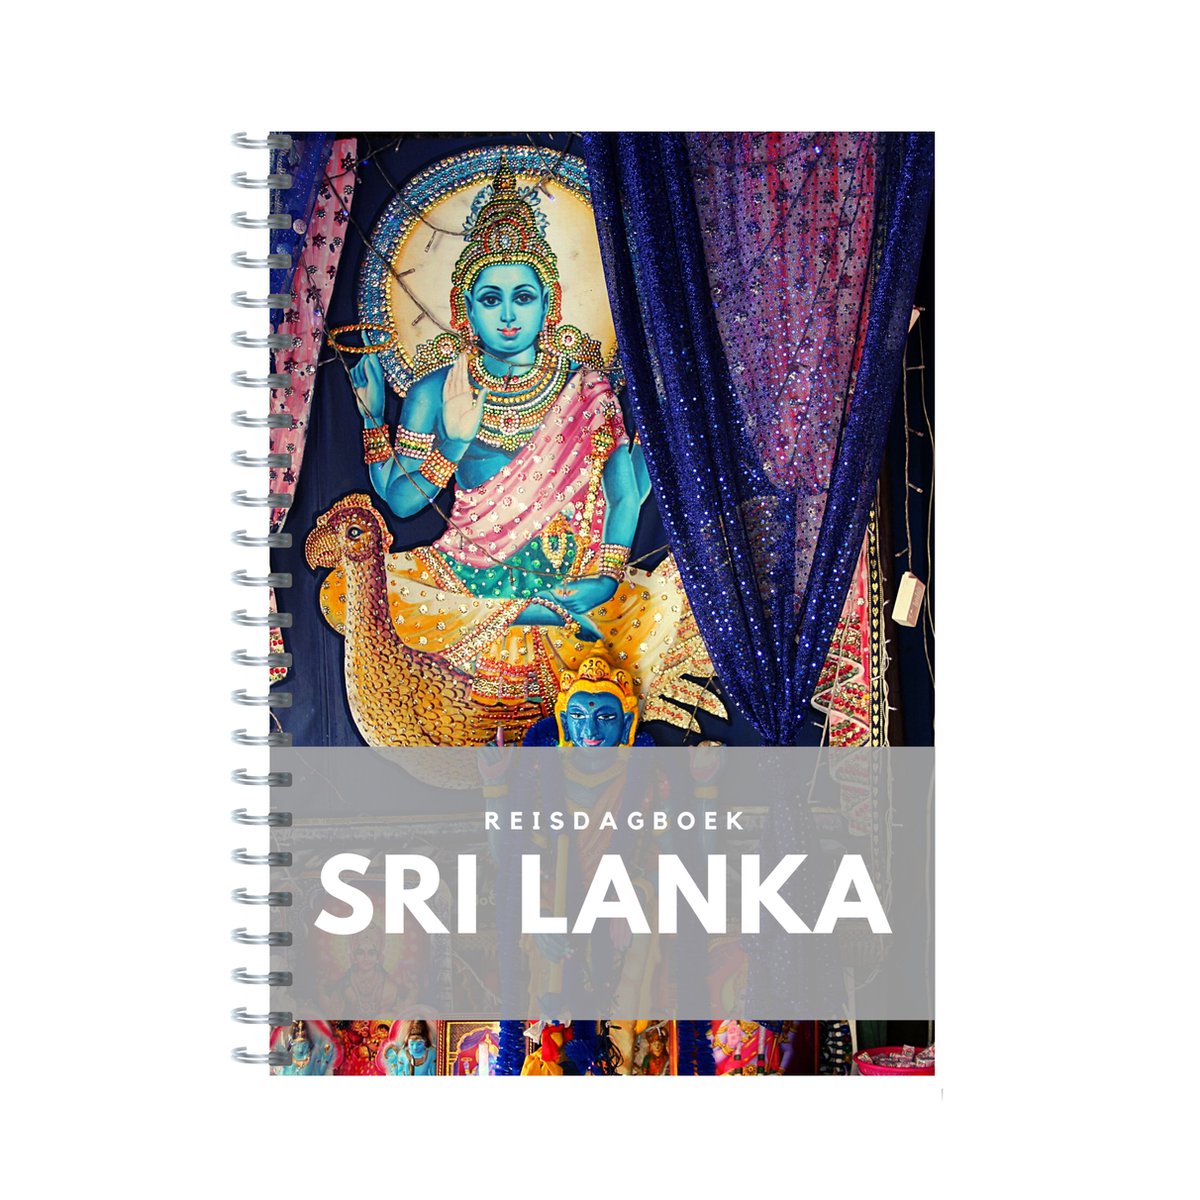 Reisdagboek Sri Lanka - schrijf je eigen reisboek